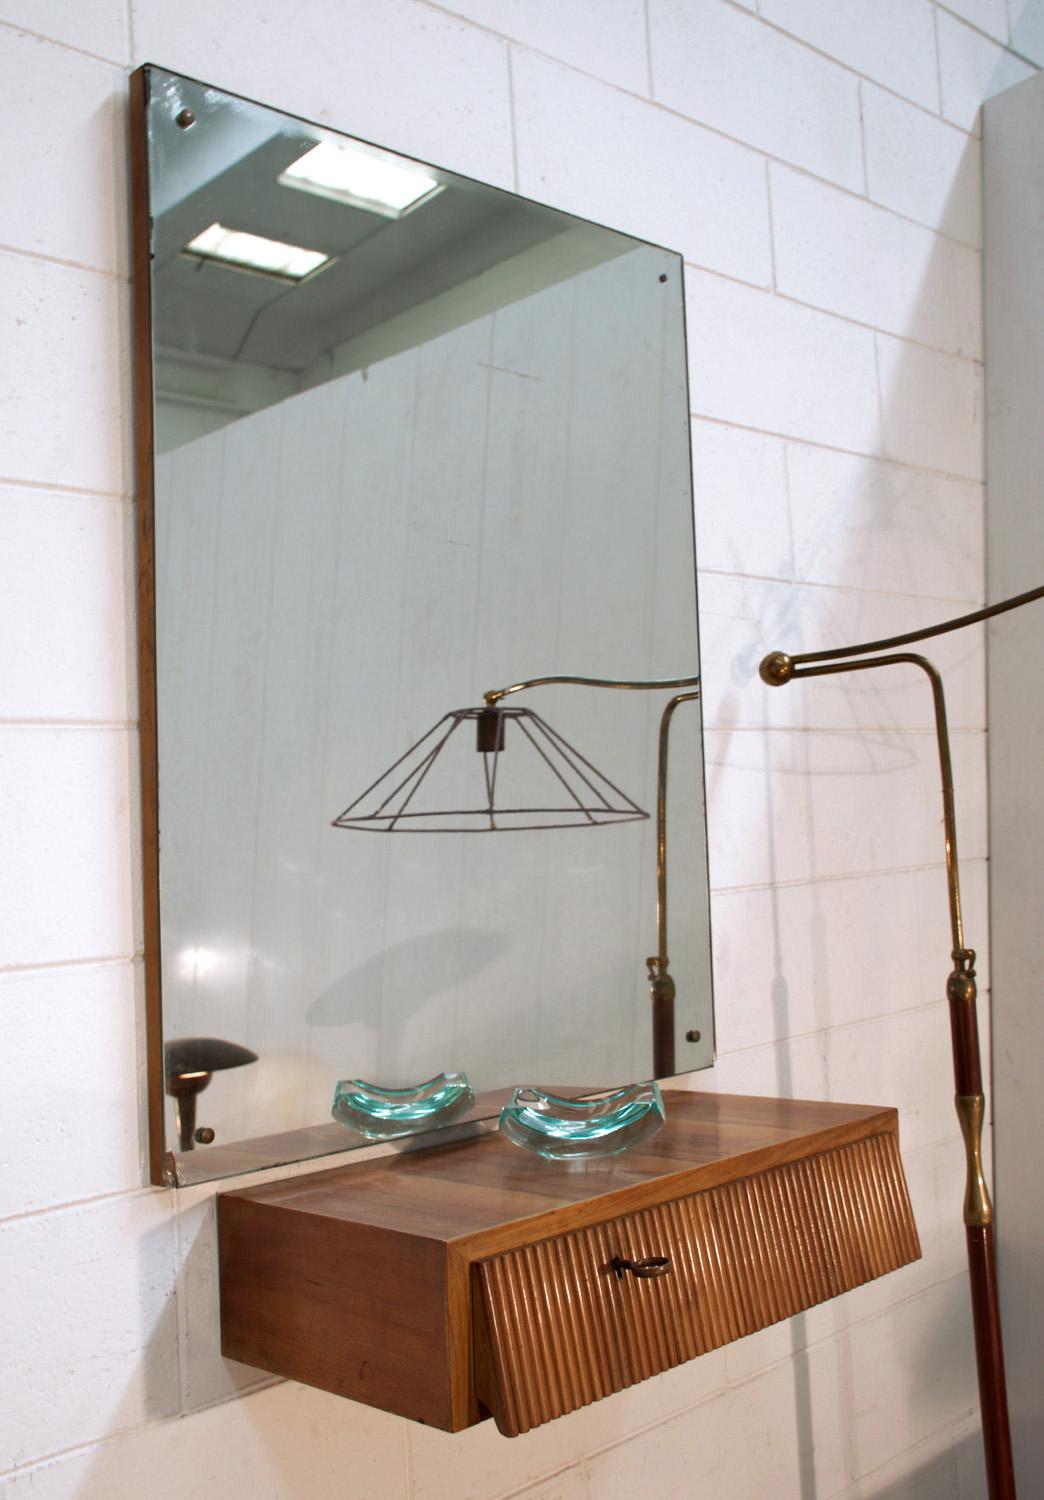 Italian Suspended Consolle Toilette with Mirror by Pierluigi Giordani, 1950s (Moderne der Mitte des Jahrhunderts)